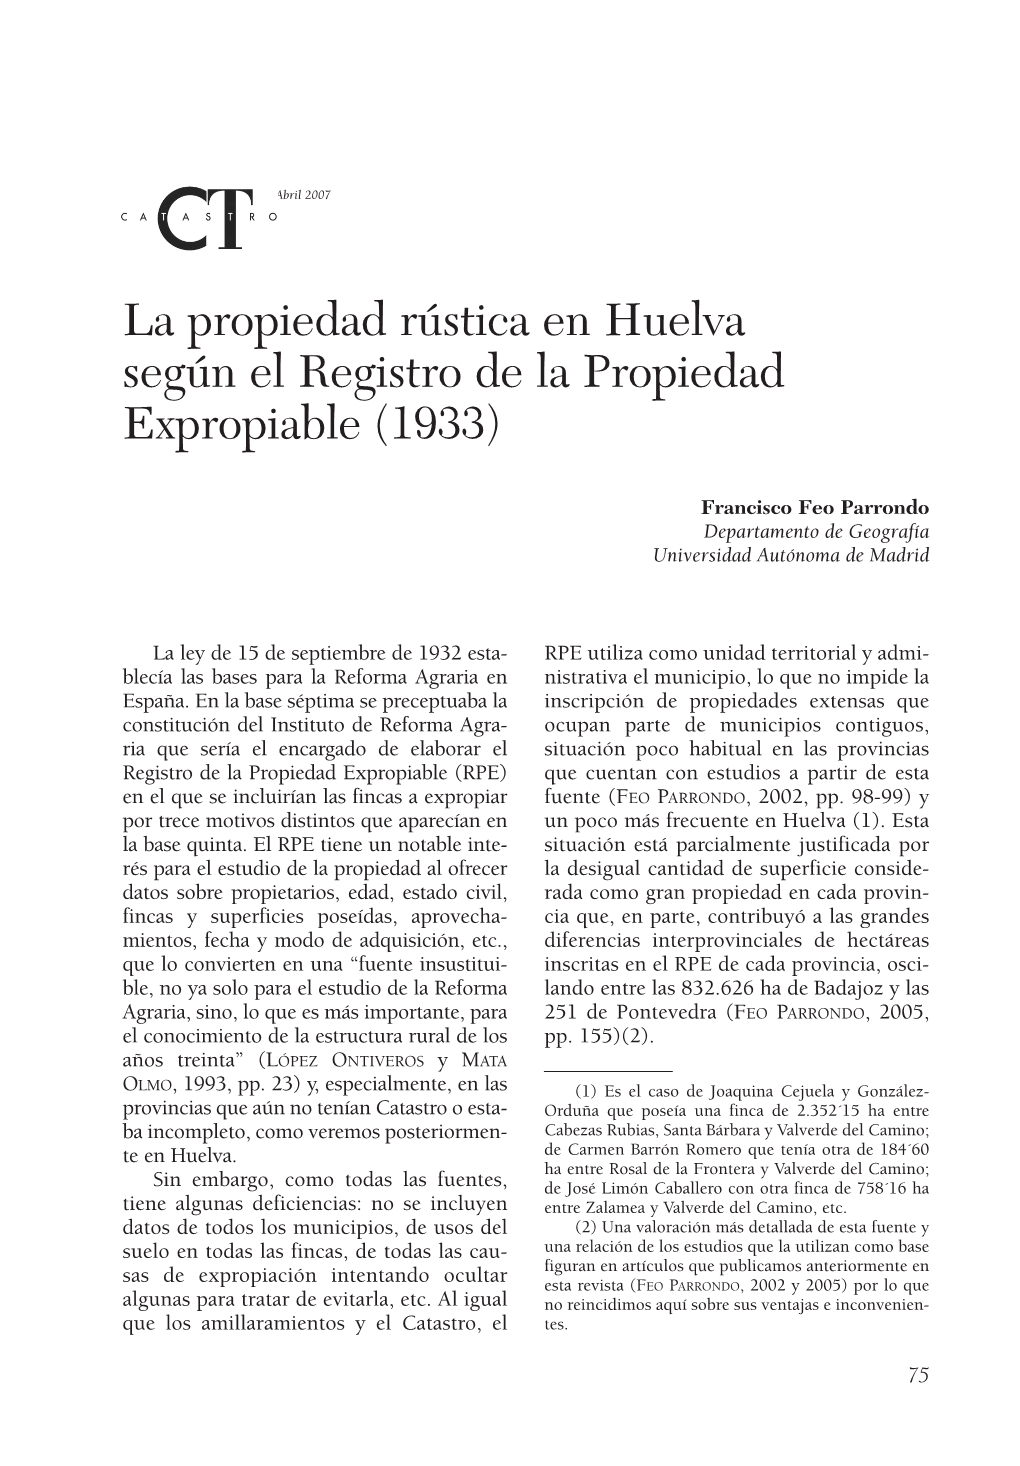 La Propiedad Rústica En Huelva Según El Registro De La Propiedad Expropiable (1933)